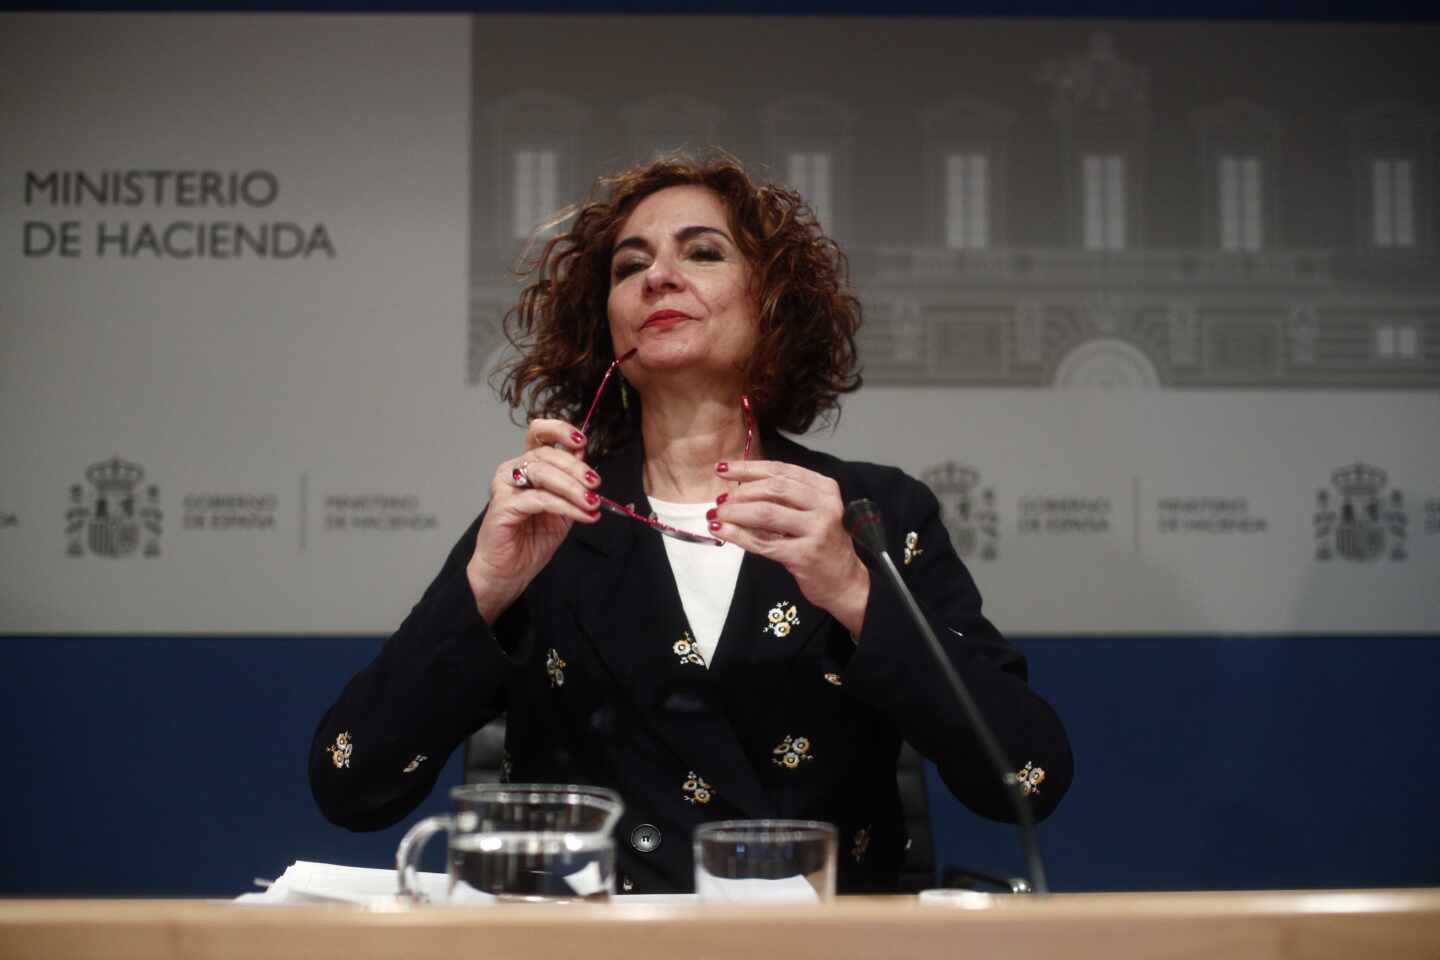 La ministra de Hacienda, María Jesús Montero, durante una rueda de prensa ante los medios en el Ministerio de Hacienda, en Madrid.